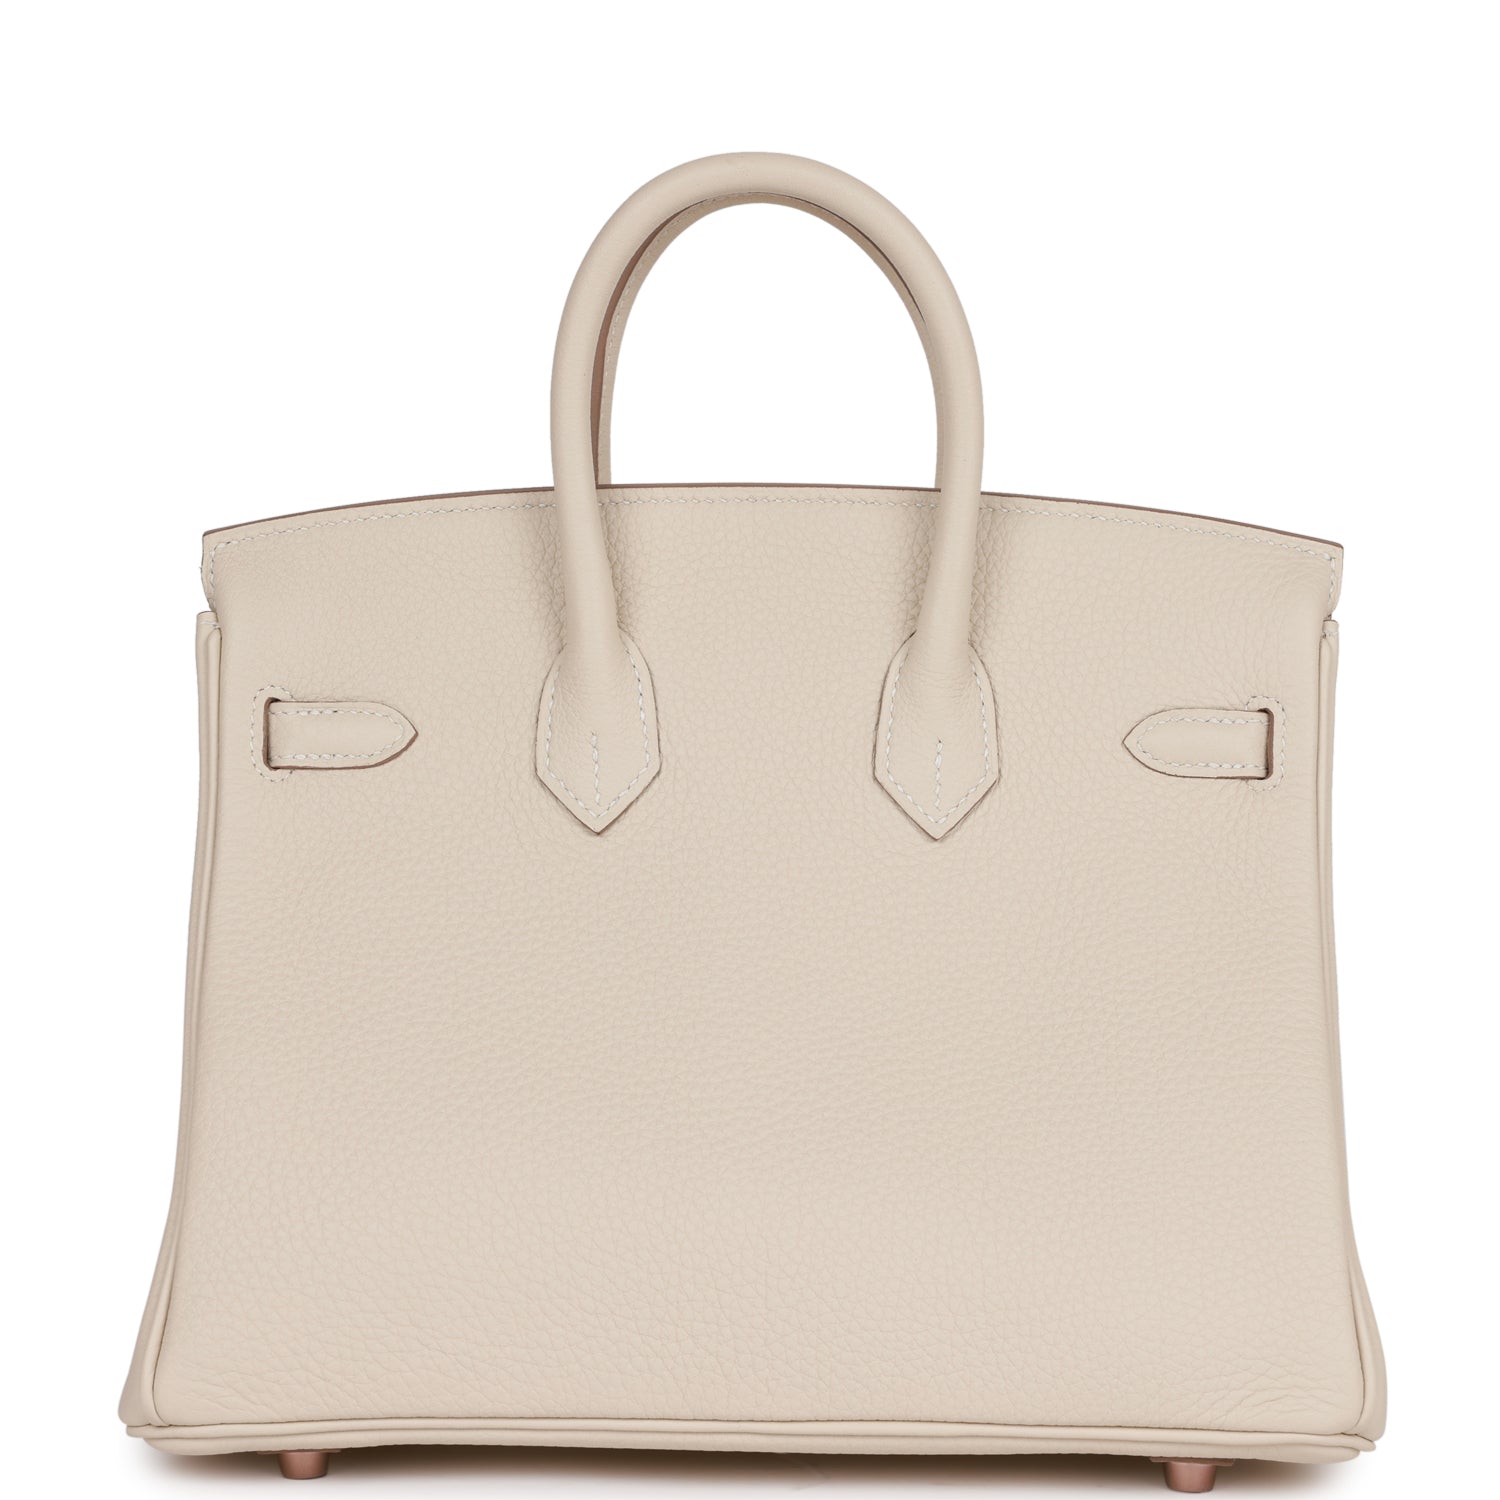 Is Hermes Birkin bag cheaper in China?